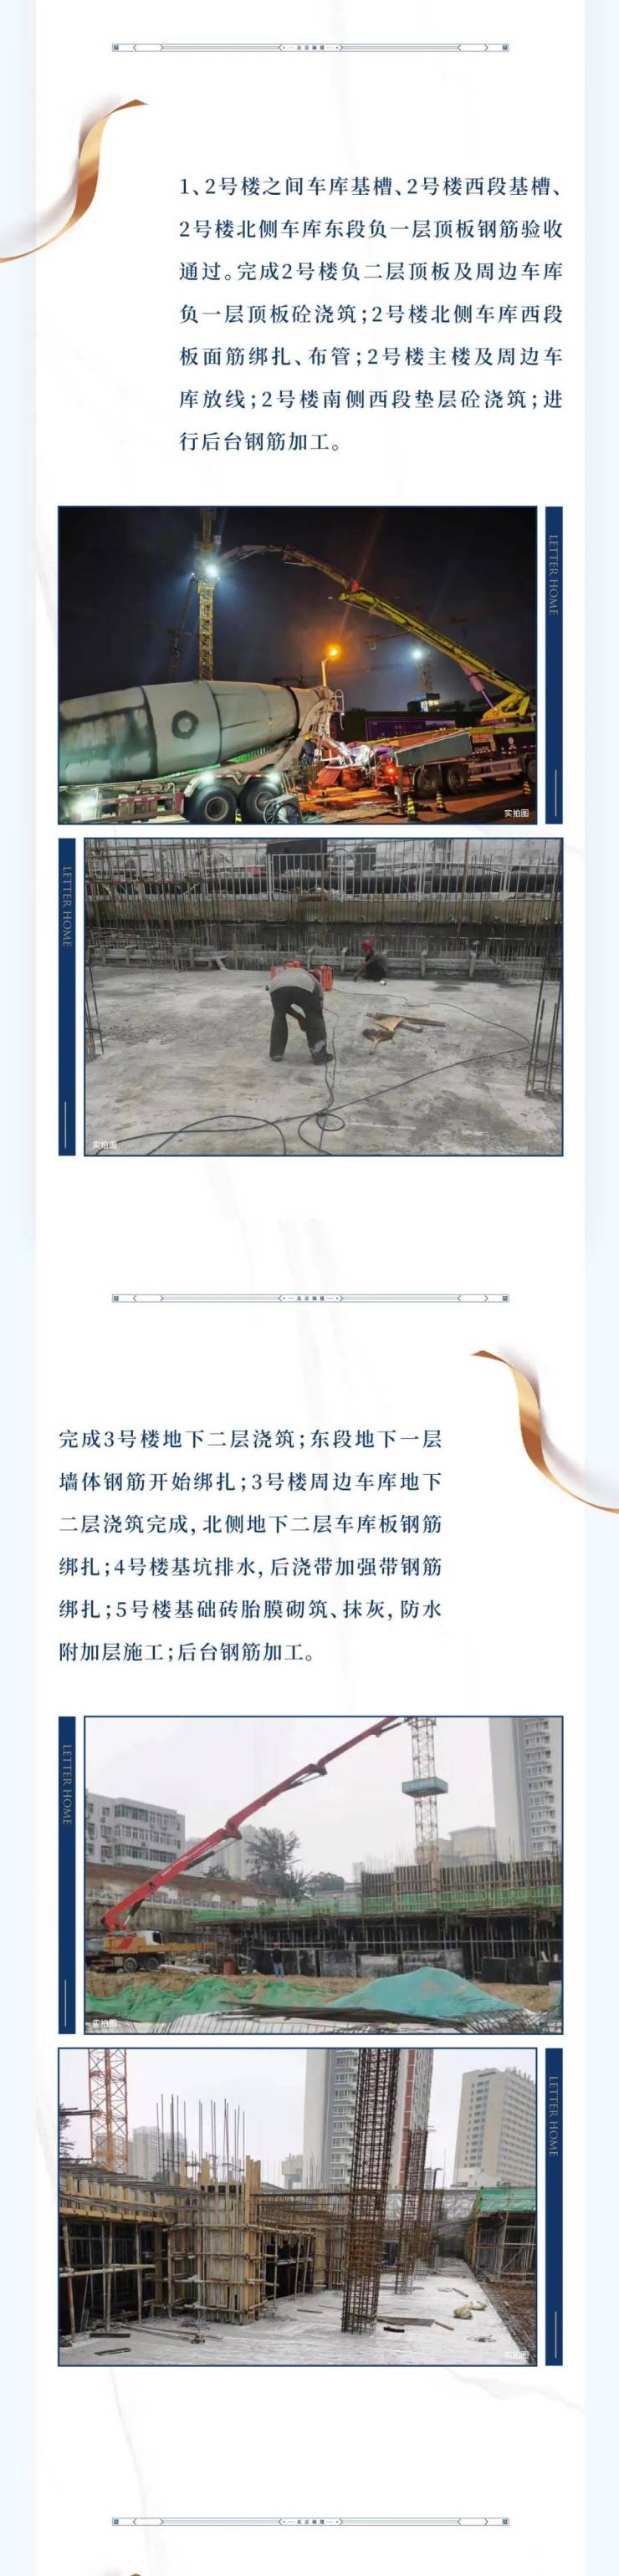 北京城建&middot;国誉上城|8月工程进度播报